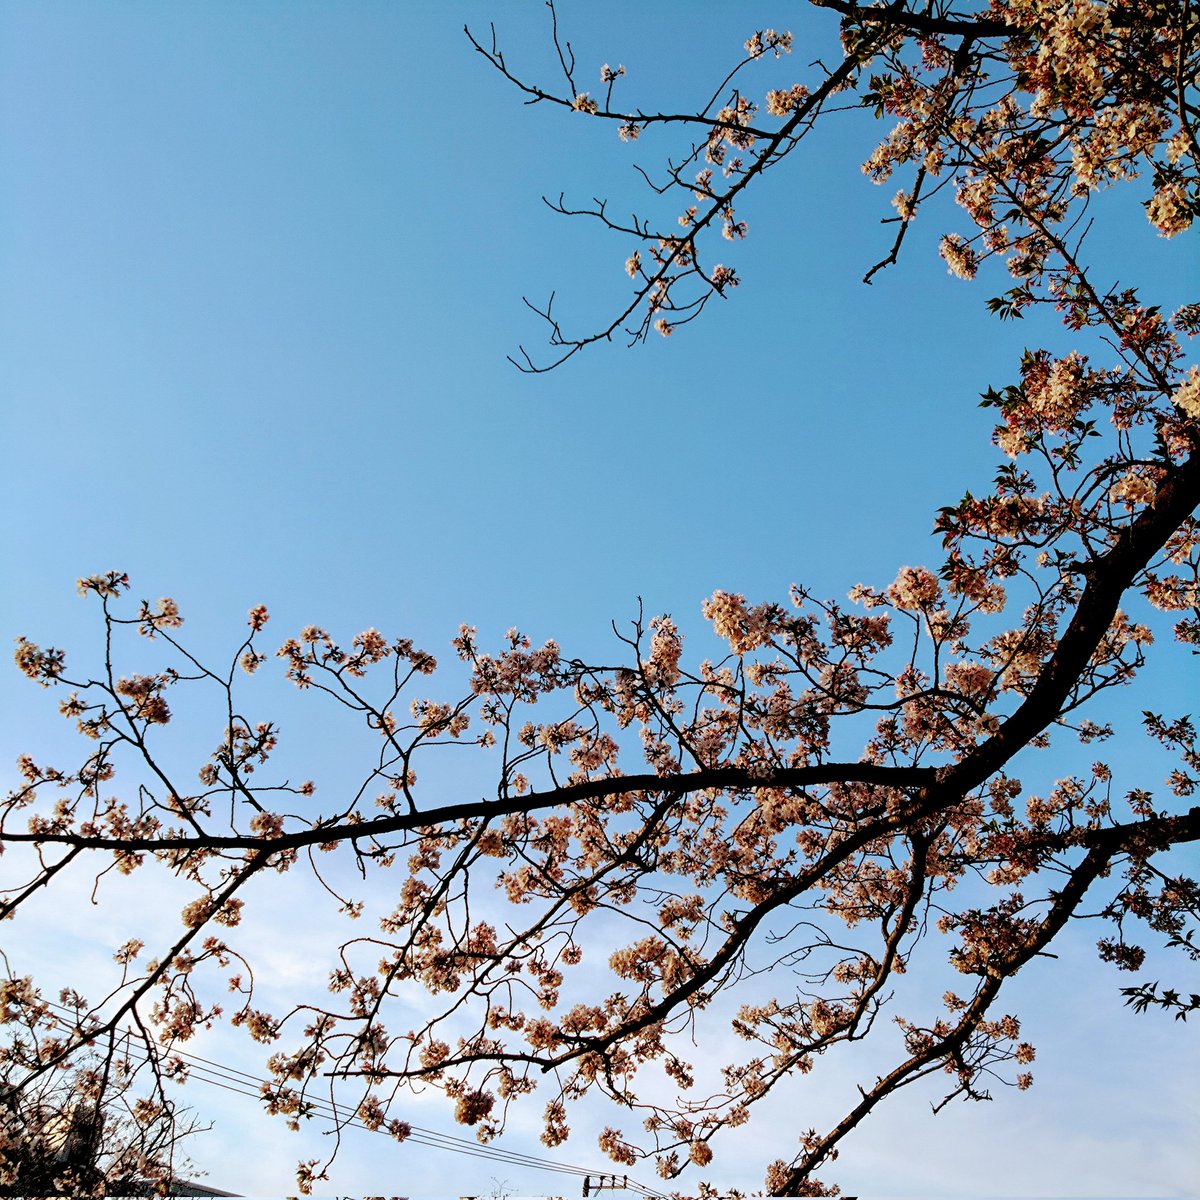 今日も大岡川沿いを散策。 まだお花見出来ました😊🌸 #かこそら #街角の花 #街角の花々 ＃桜 #キリトリセカイ #yokohama #横浜 #大岡川